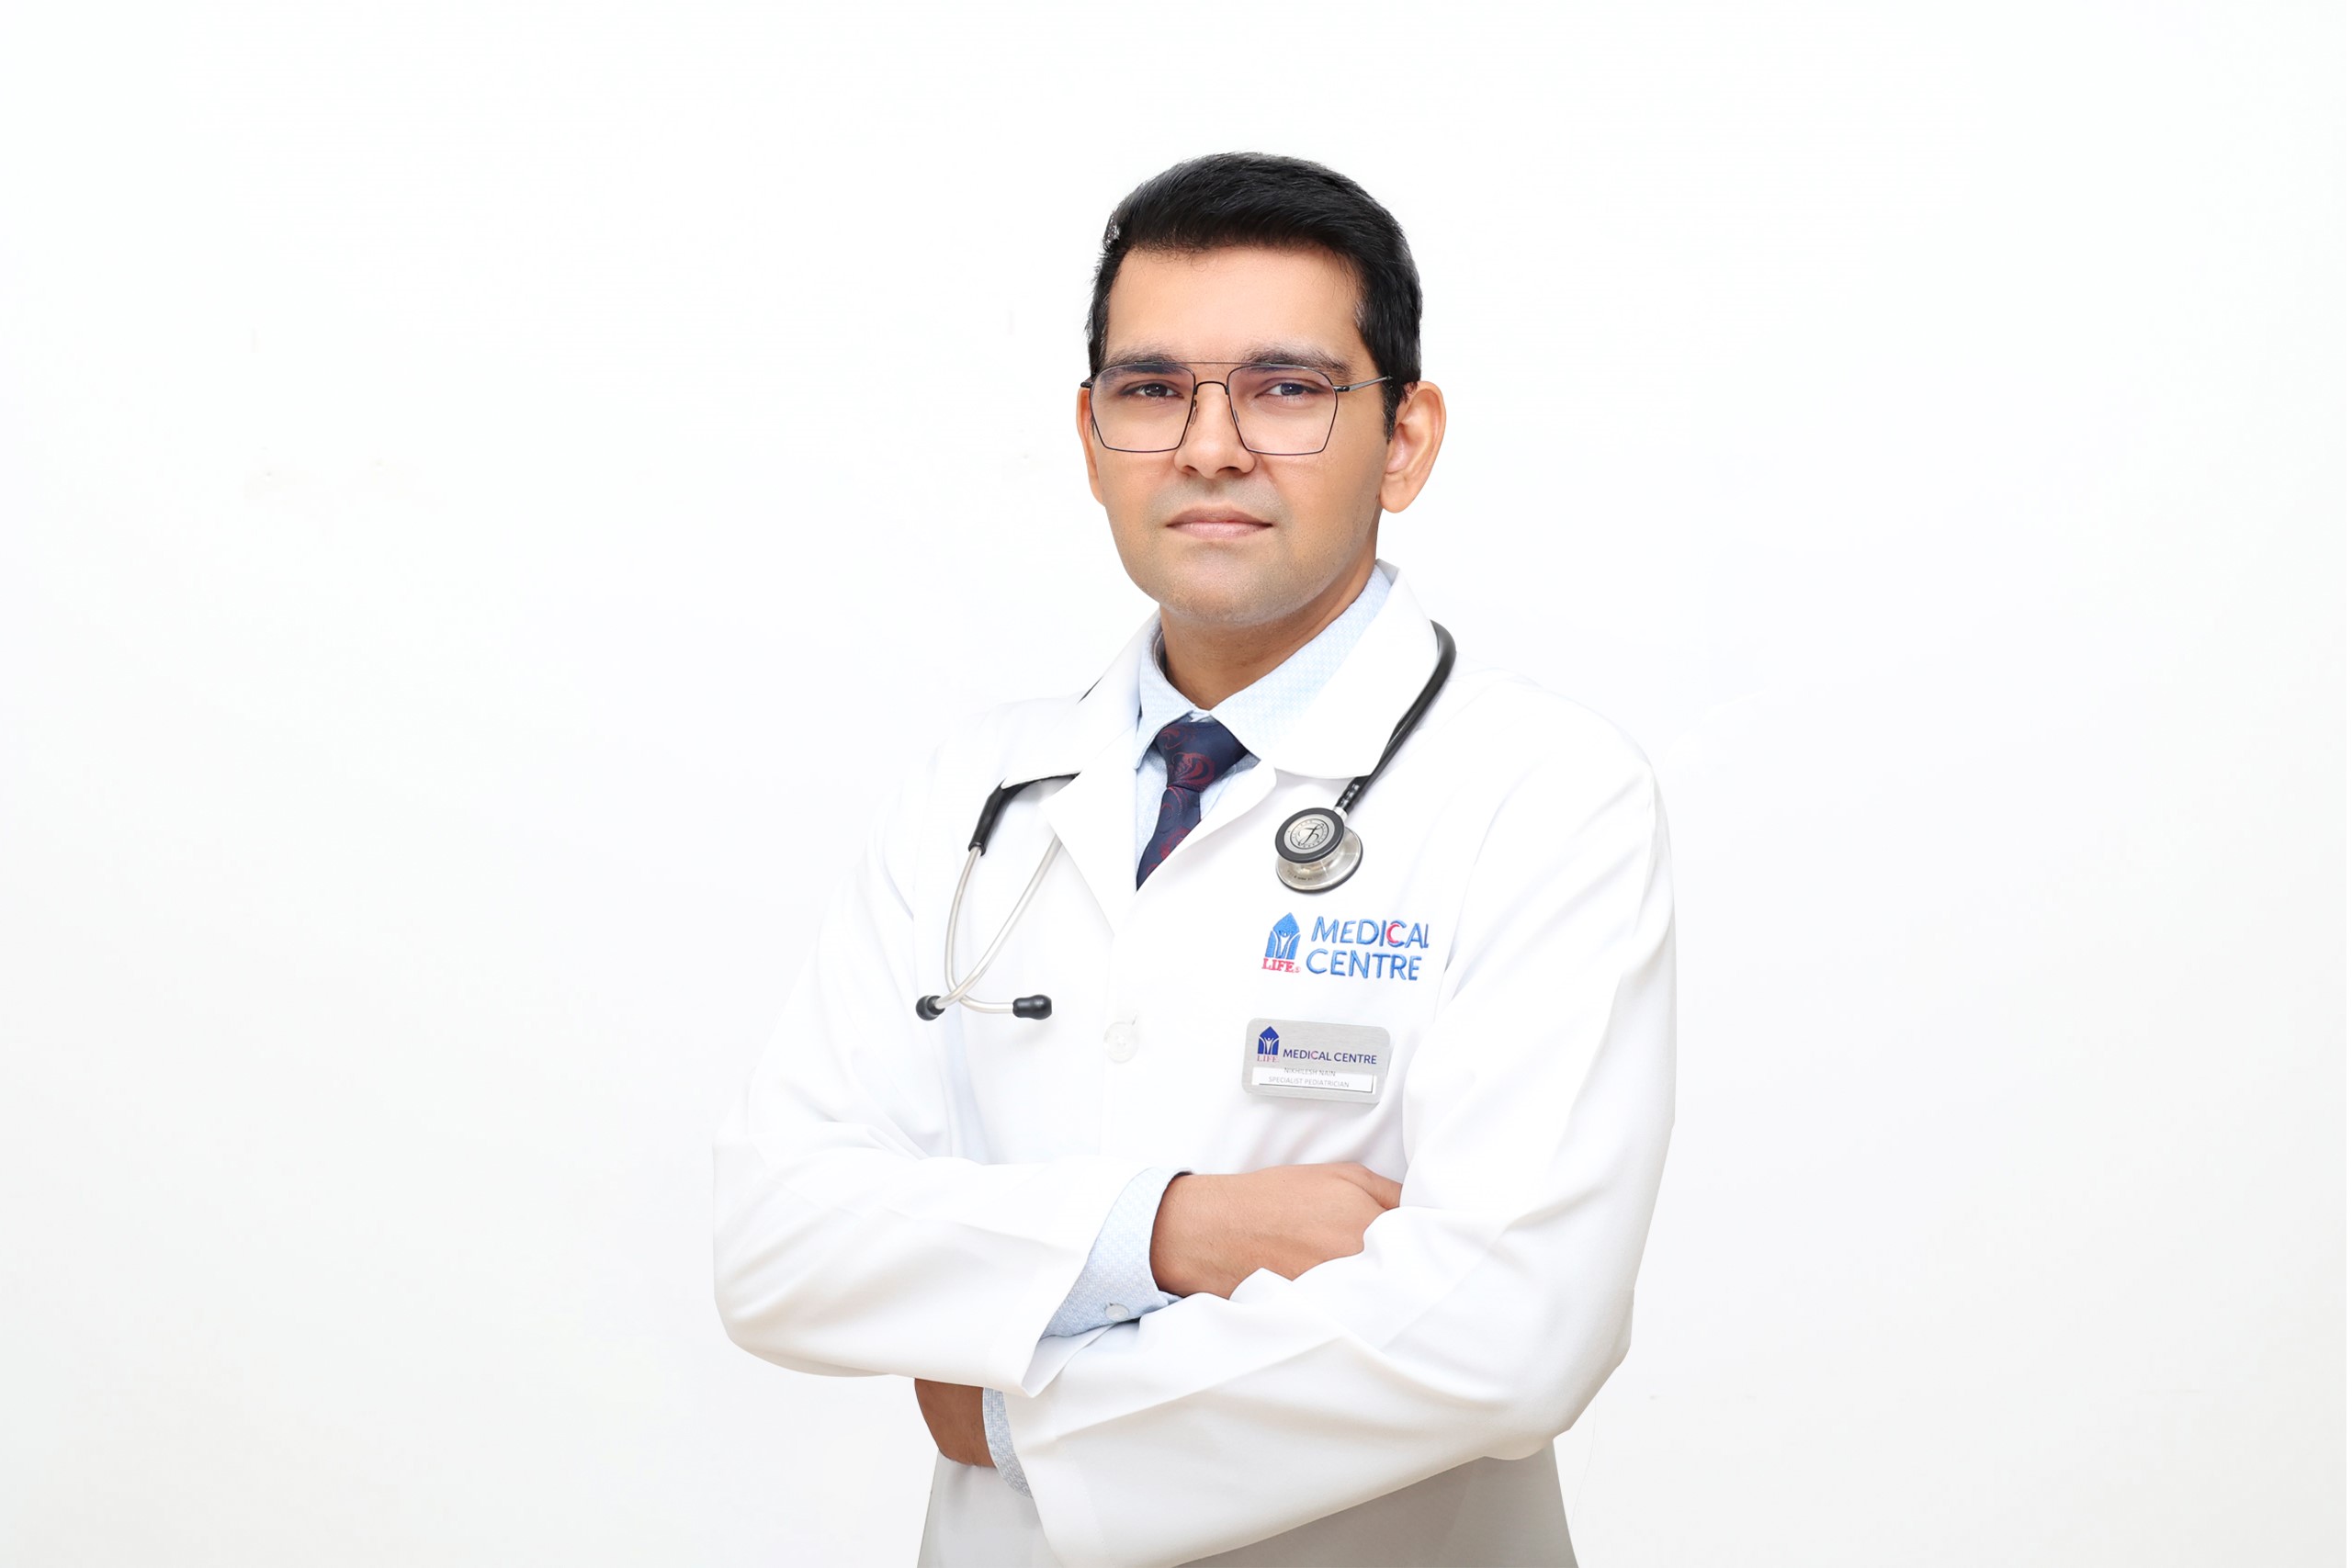 Dr. Nikhilesh Nain - Life Medical Centre